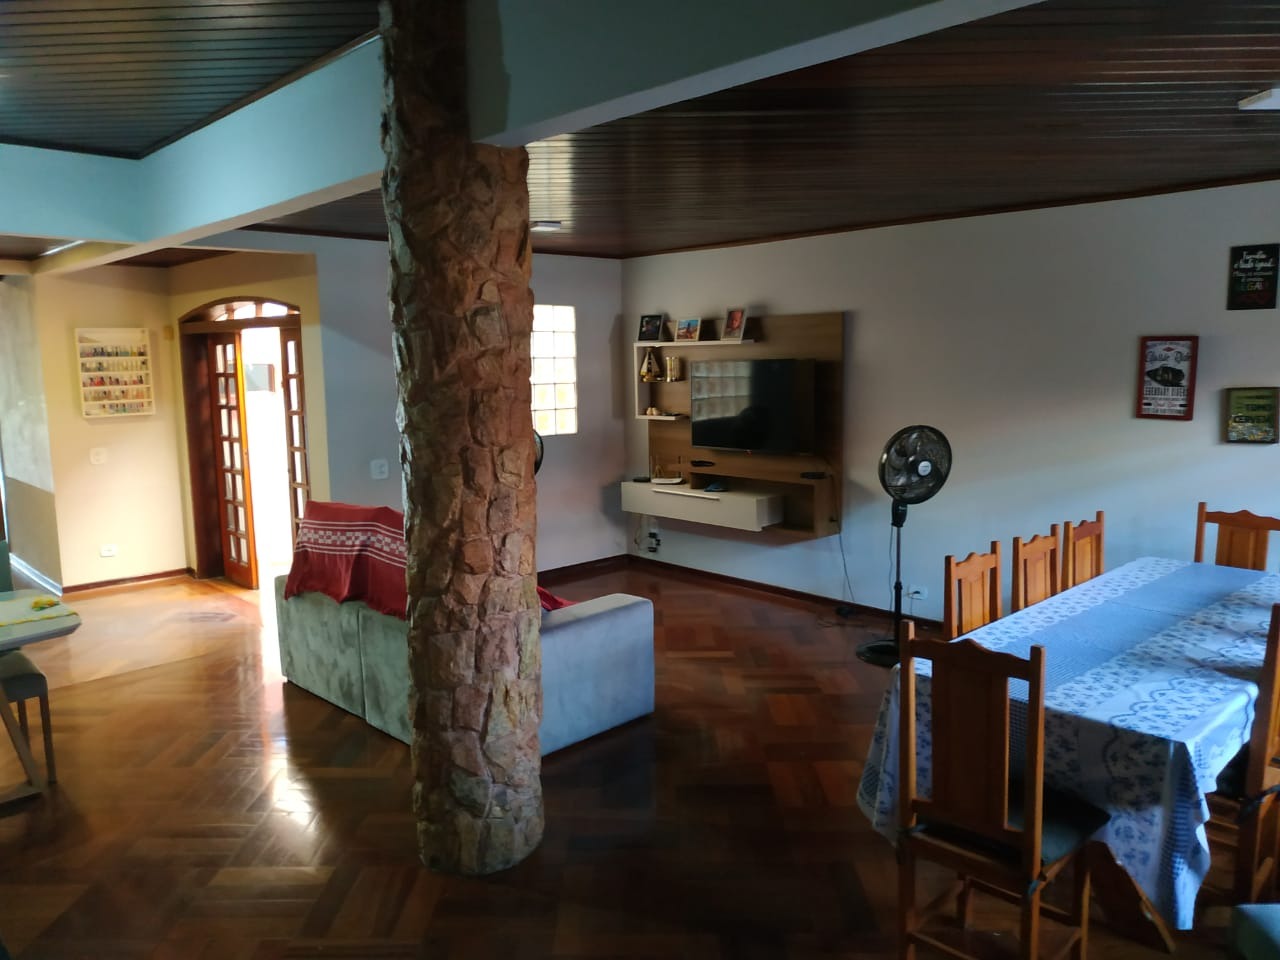 Casa para comprar, 3 quartos, 1 suíte, 1 vaga, no bairro Nossa Senhora Aparecida II em Saltinho - SP